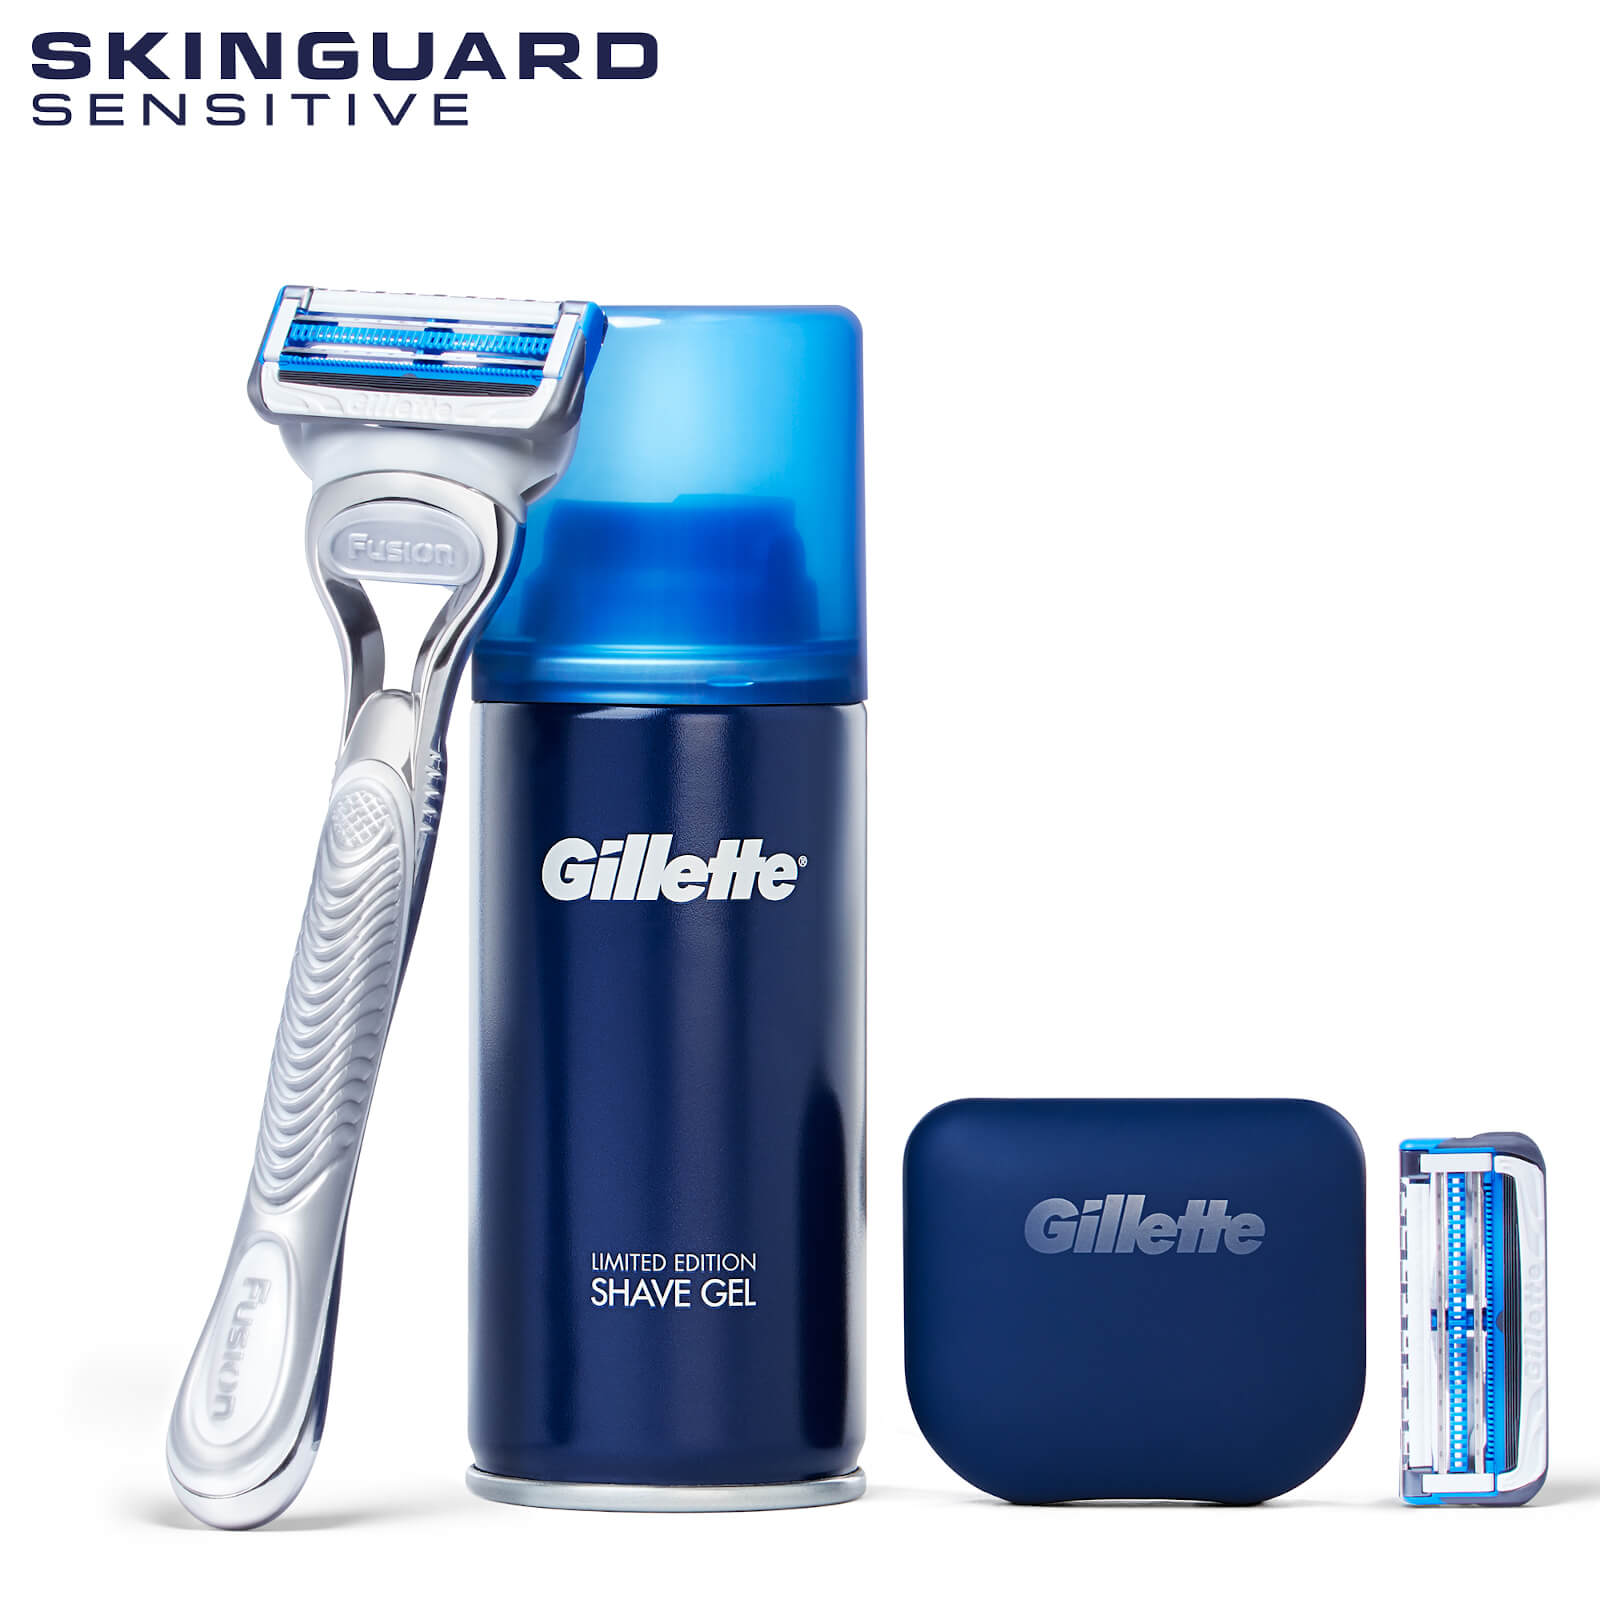 Gillette SkinGuard Starter Kit Subscription - Trial 2 - 3 Month Plan